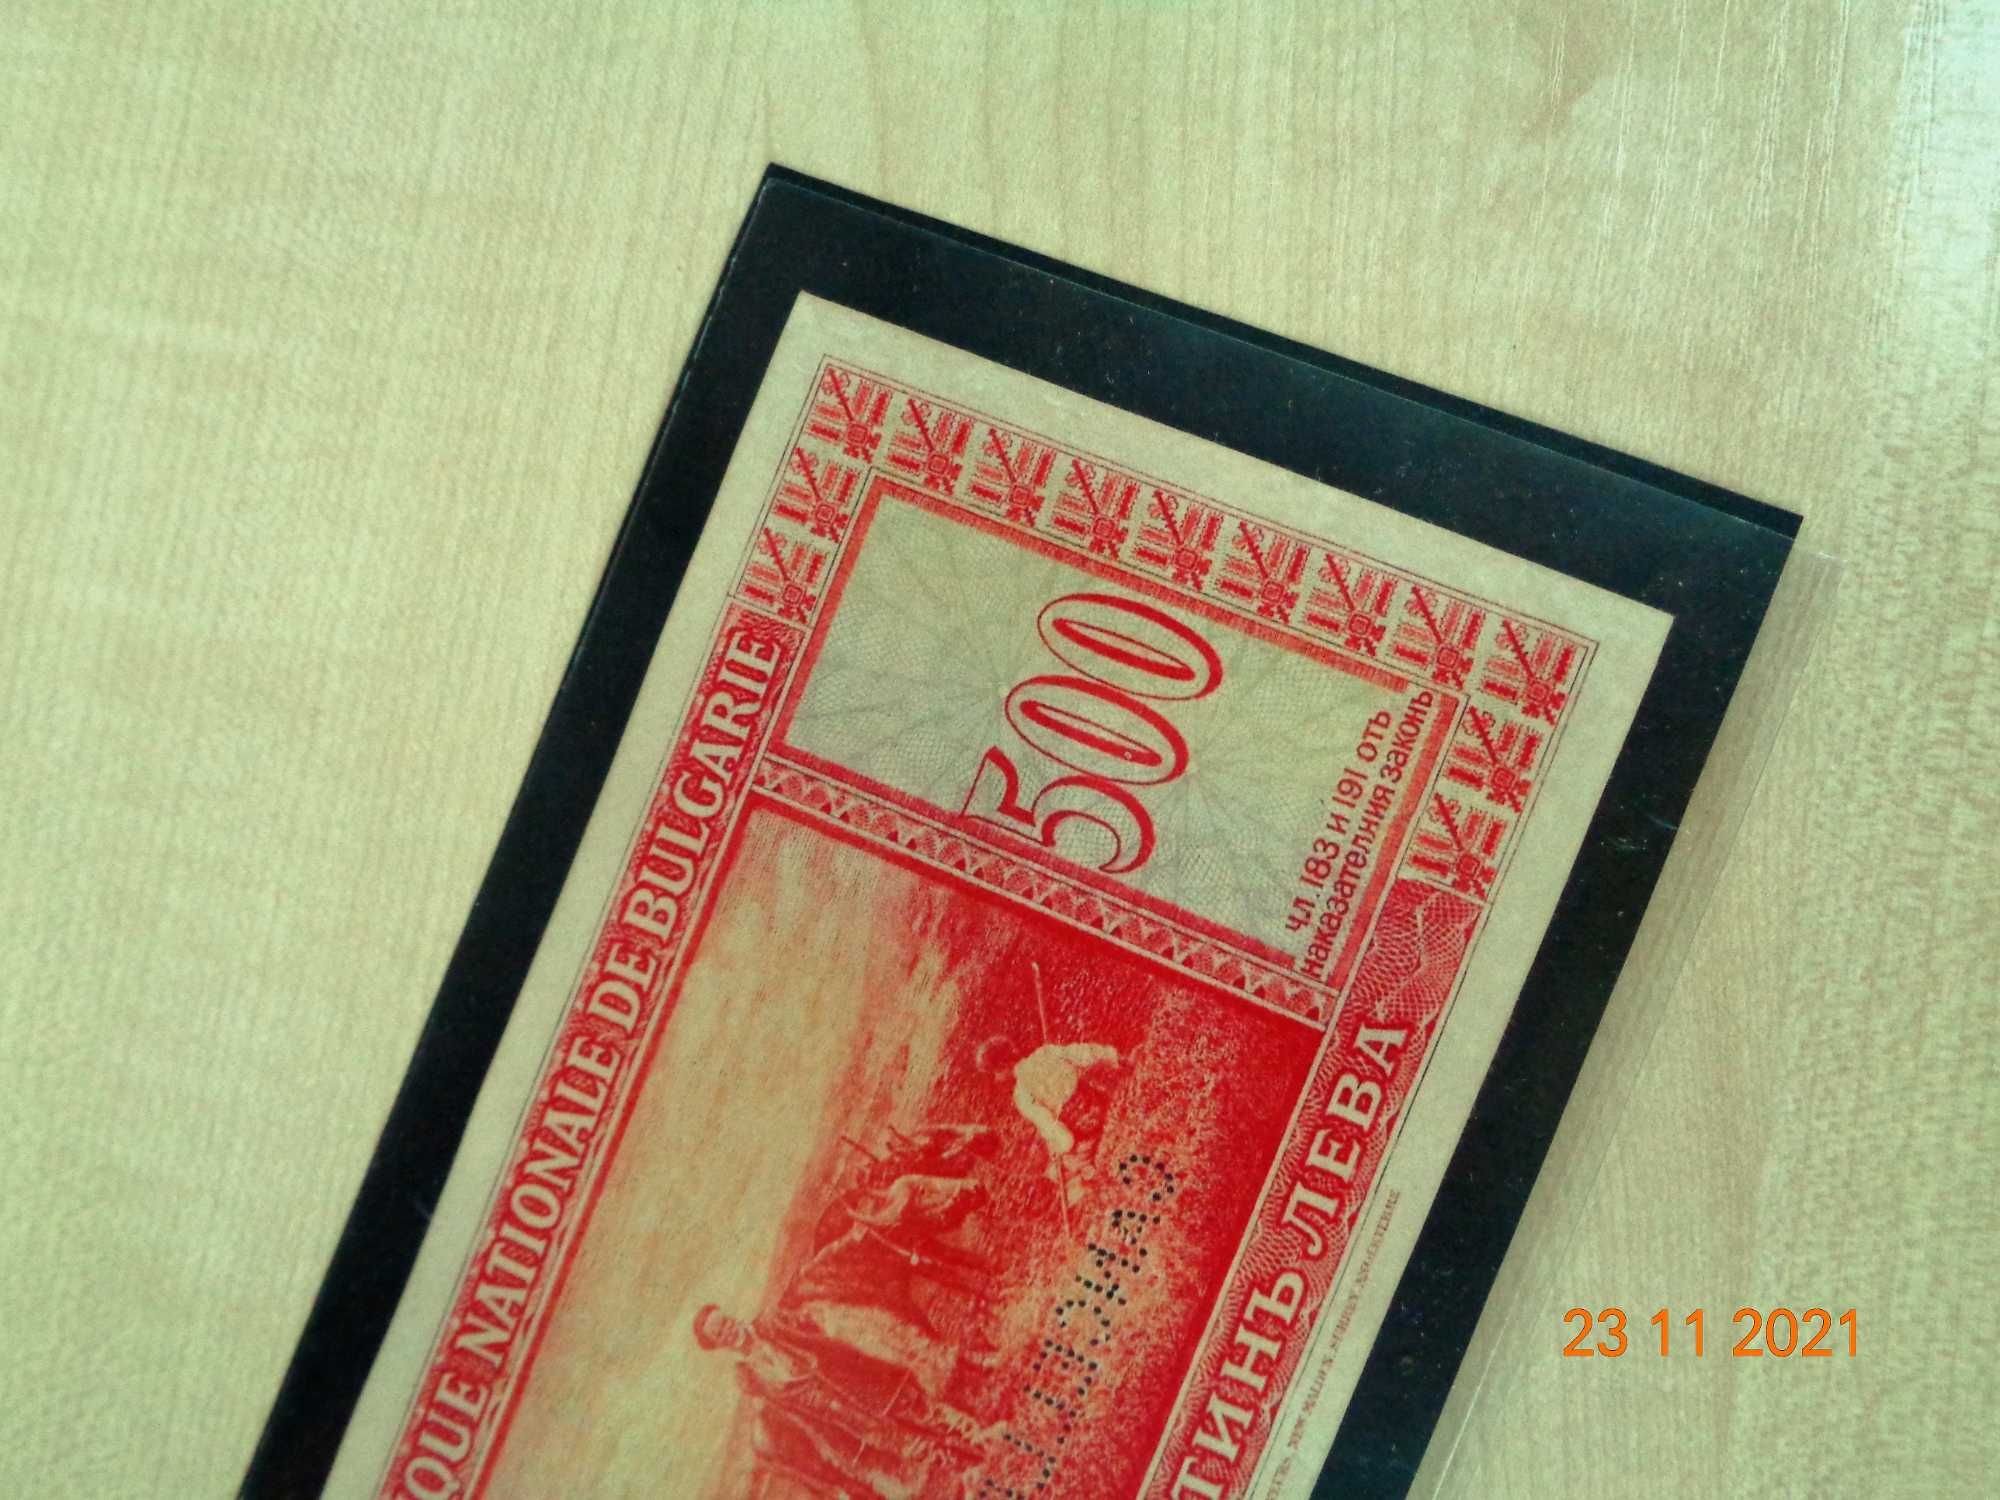 банкноти 1925г всичките банкноти